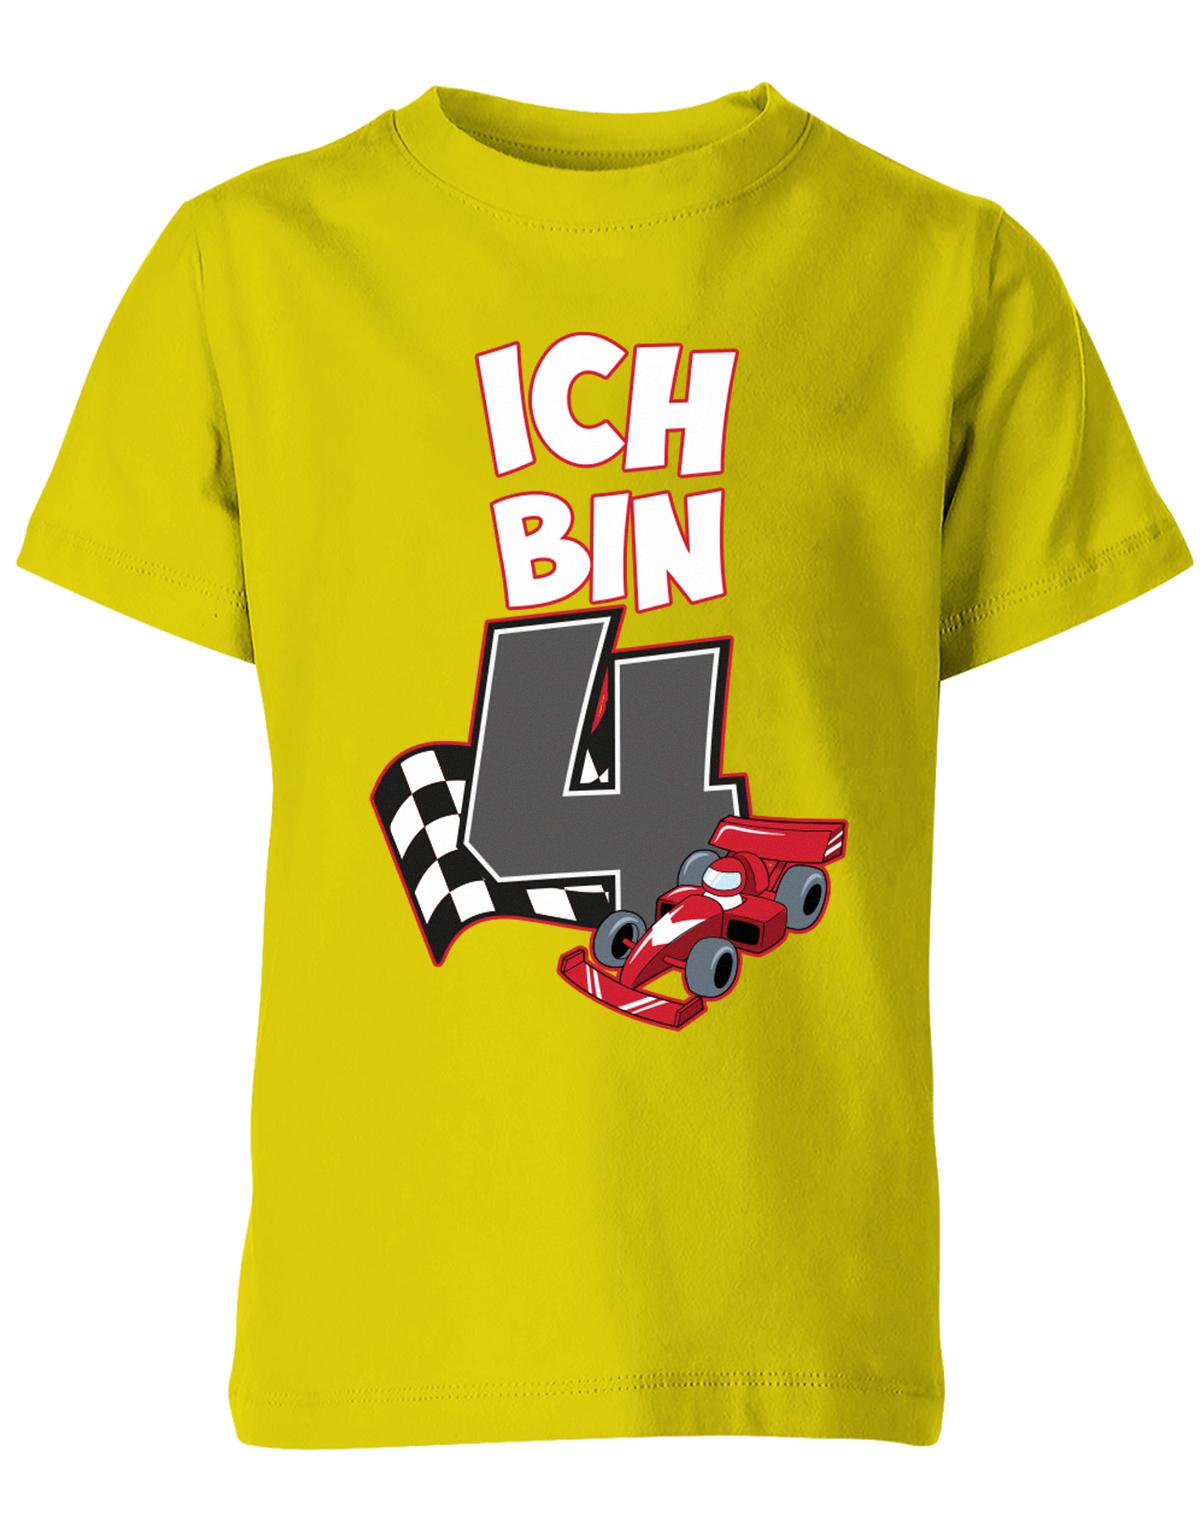 ich-bin-4-autorennen-rennwagen-geburtstag-rennfahrer-kinder-shirt-gelb